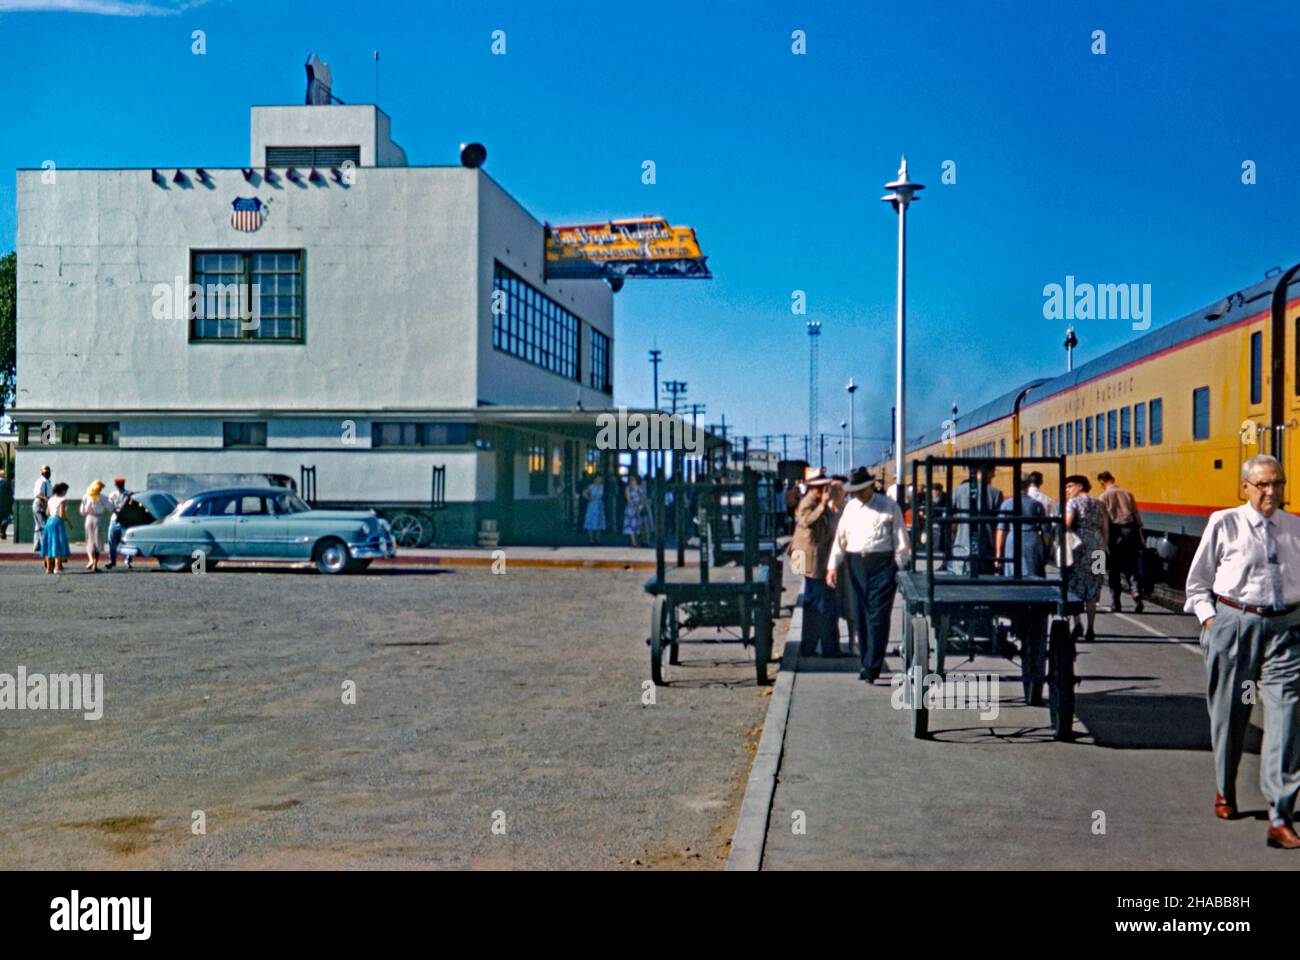 Une scène animée à la gare de Las Vegas, Nevada USA en 1956 – un train Union Pacific est arrivé à la plate-forme.La gare ferroviaire de style «Treamline moderne» a été construite en 1940 et améliorée avec des lumières au néon en 1946 (notez le signe distinctif au néon en forme de moteur de chemin de fer jaune sur le bâtiment).La gare desservait plusieurs trains Union Pacific par jour, reliant Los Angeles à l'ouest et Salt Lake City, puis Chicago et St. Louis à l'est.Cette station a été démolie en 1971 – une photographie vintage de 1950s. Banque D'Images